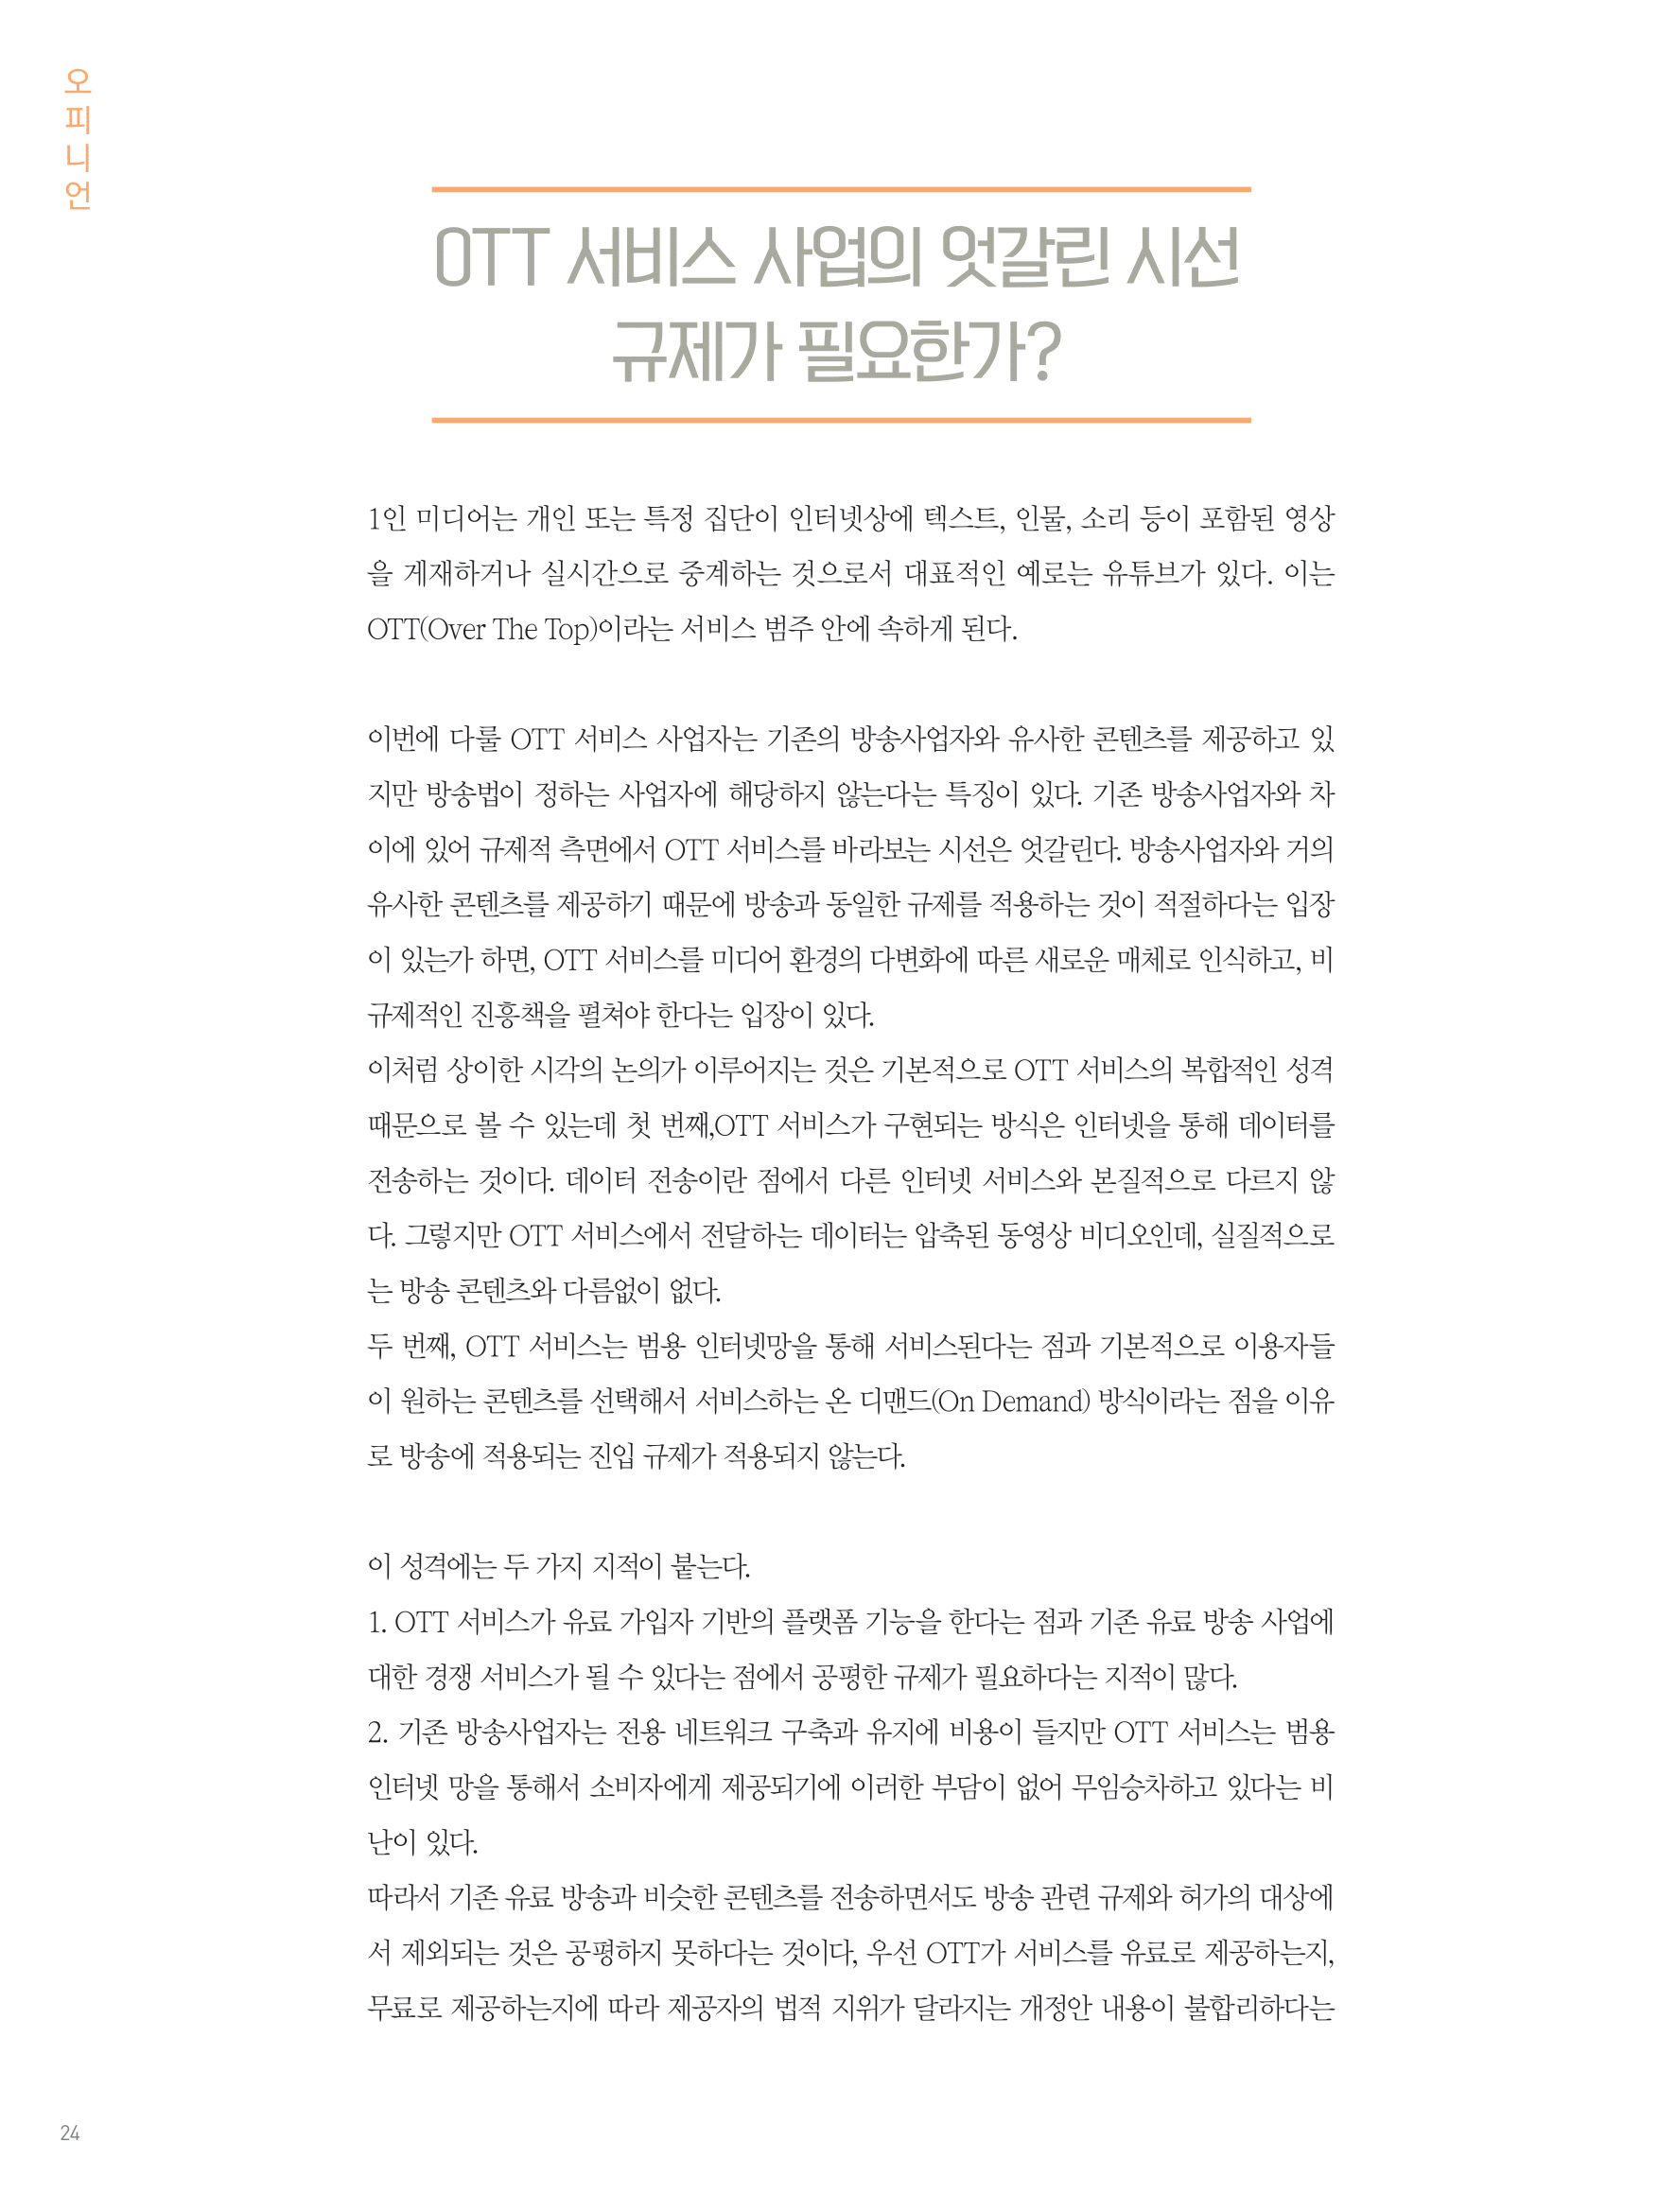 뜻새김 신문 75호 22